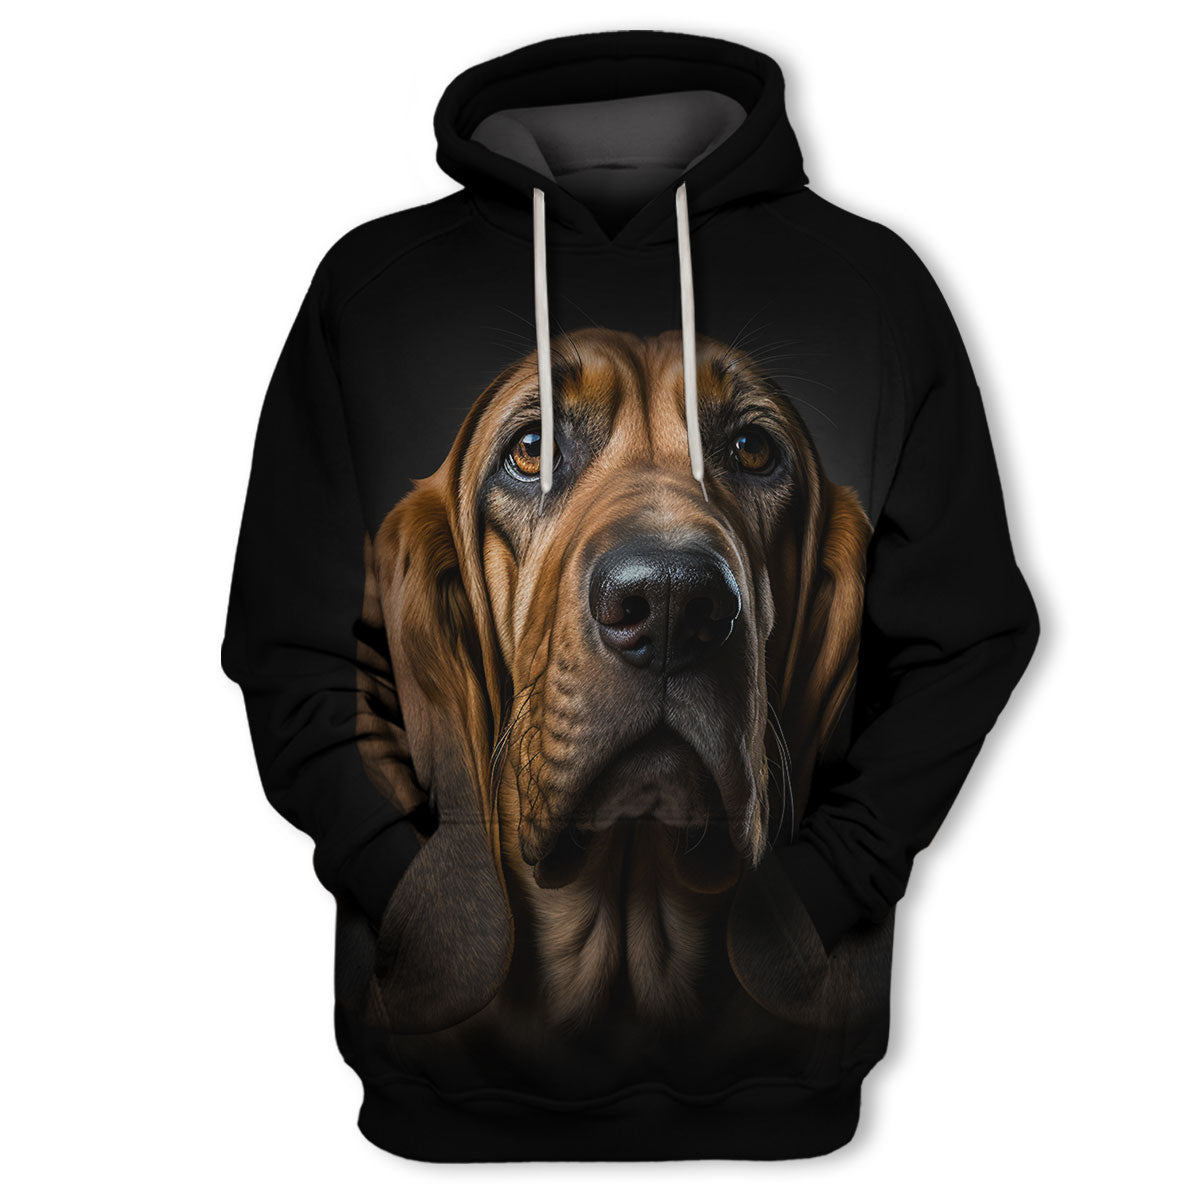 Bloodhound - Unisex 3D Graphic Hoodie